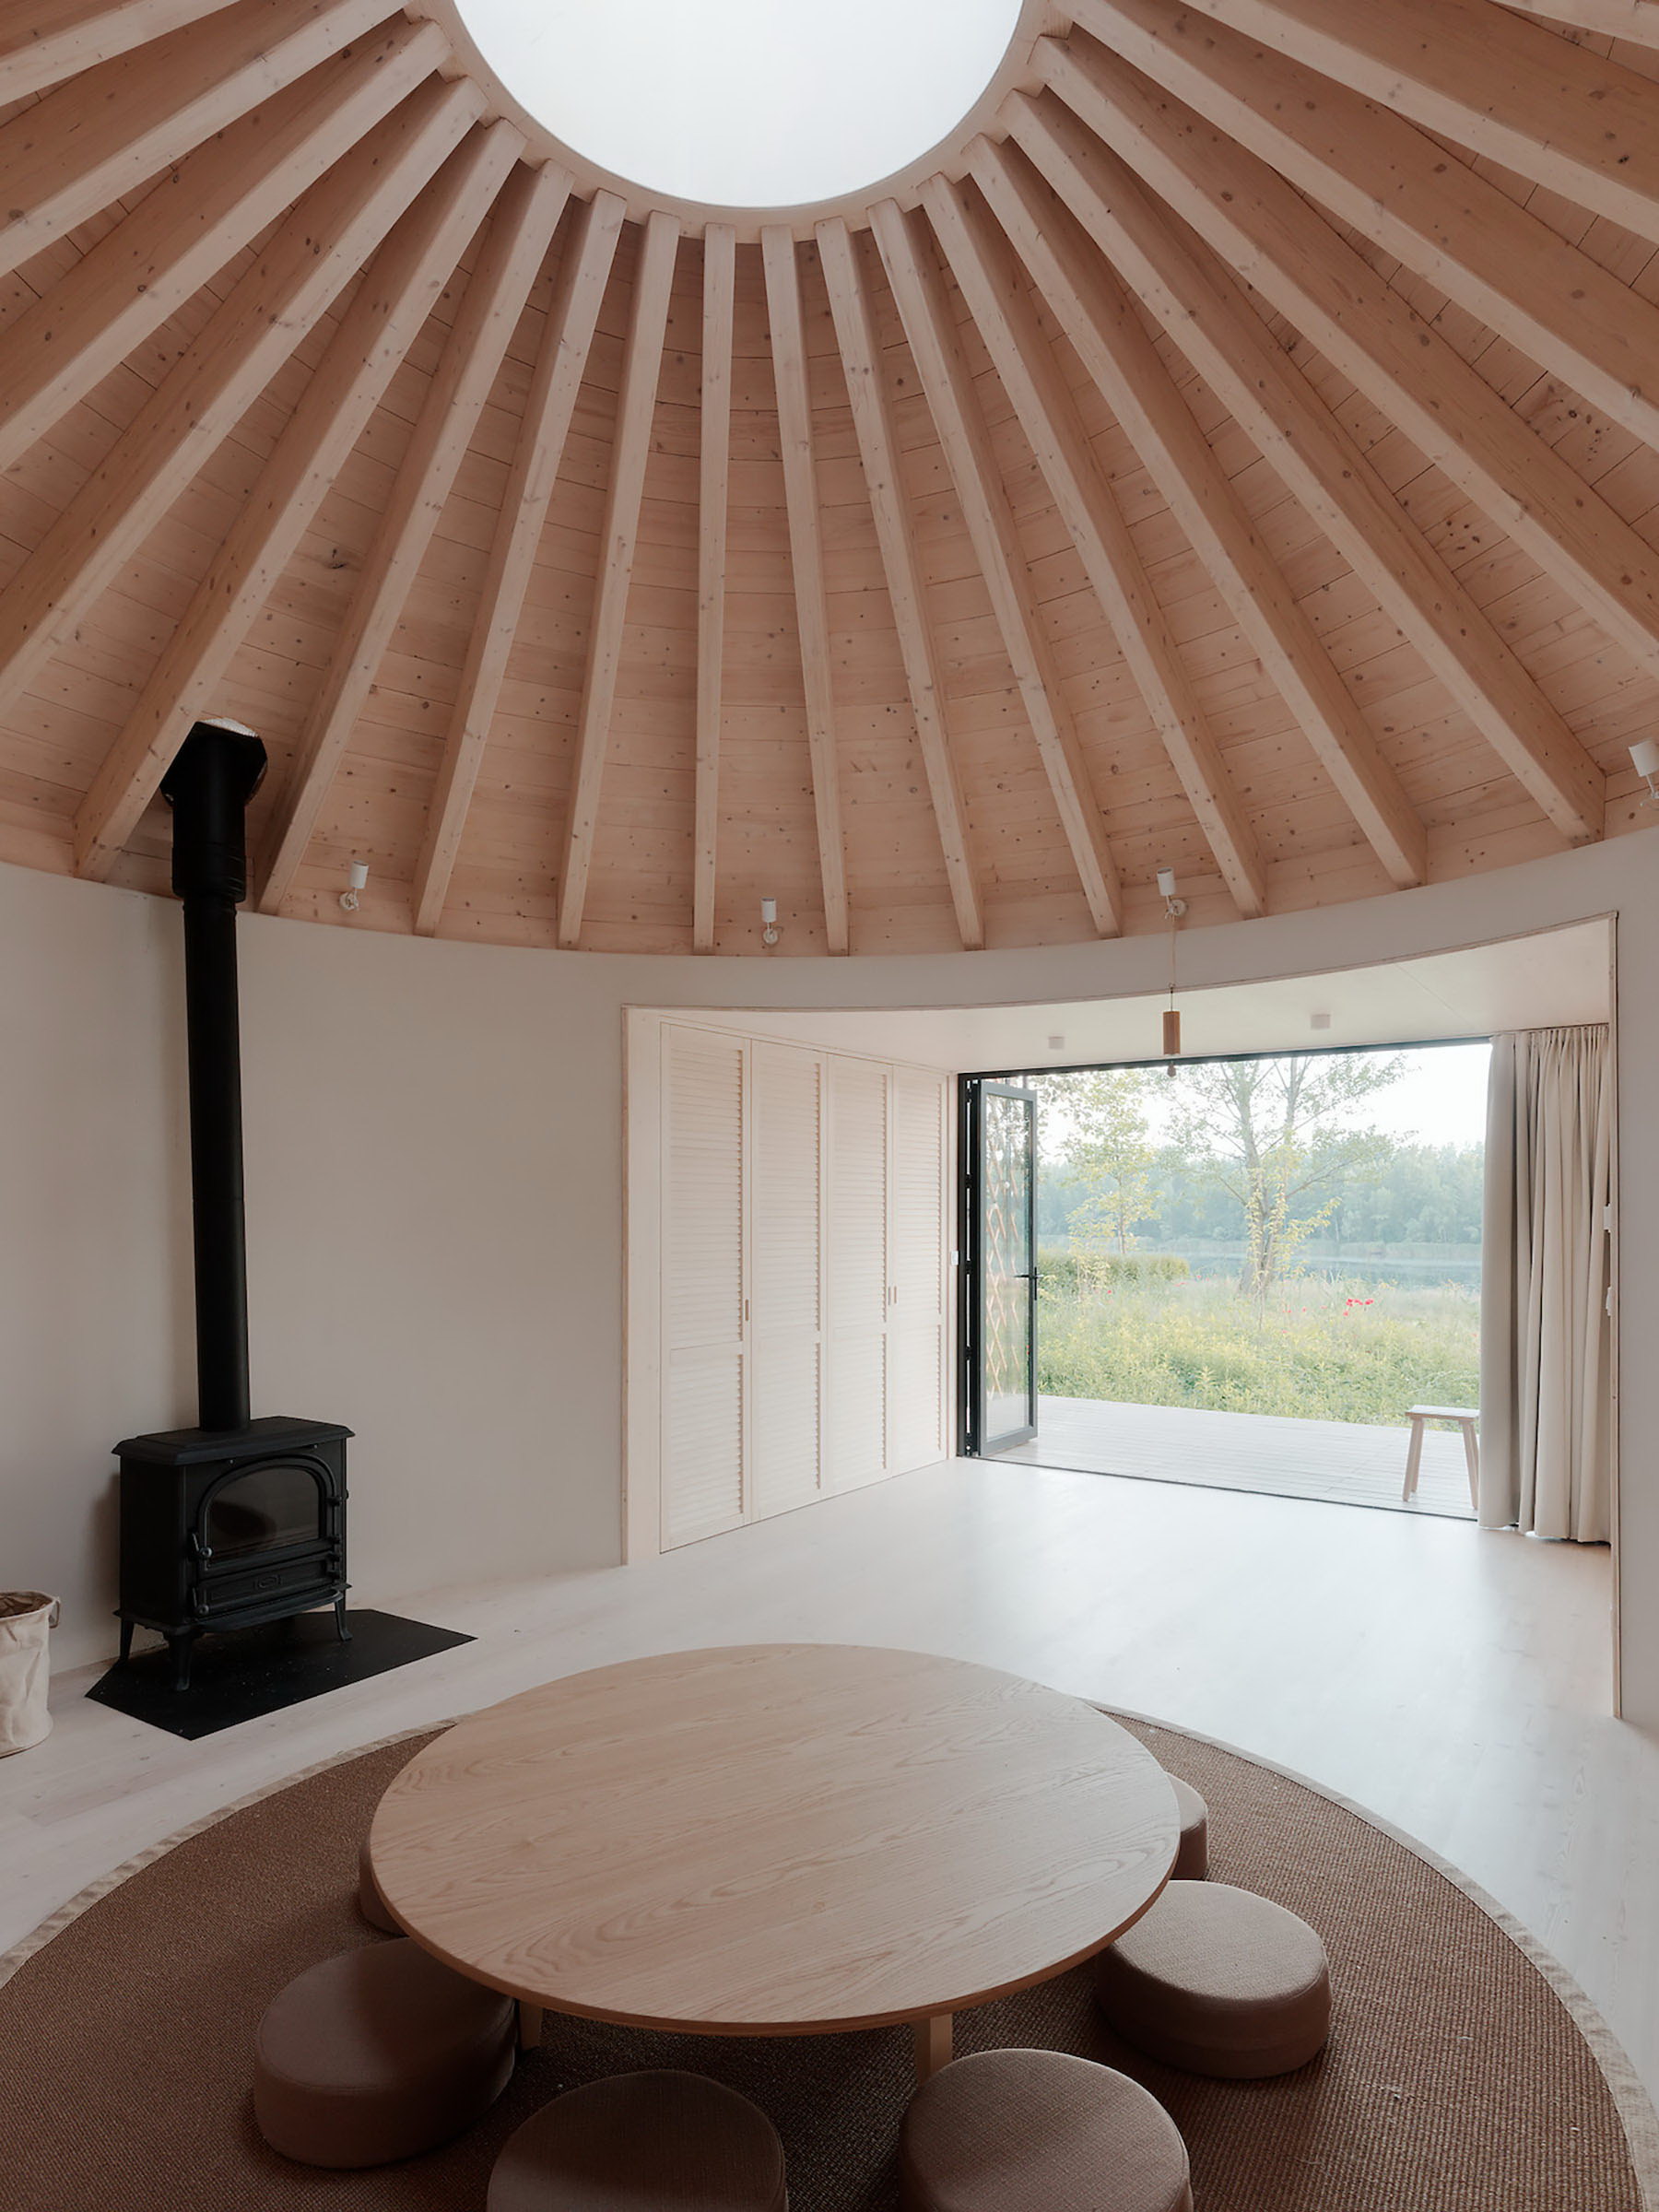 Attila | Oval-Shaped Cottage by JRKVC